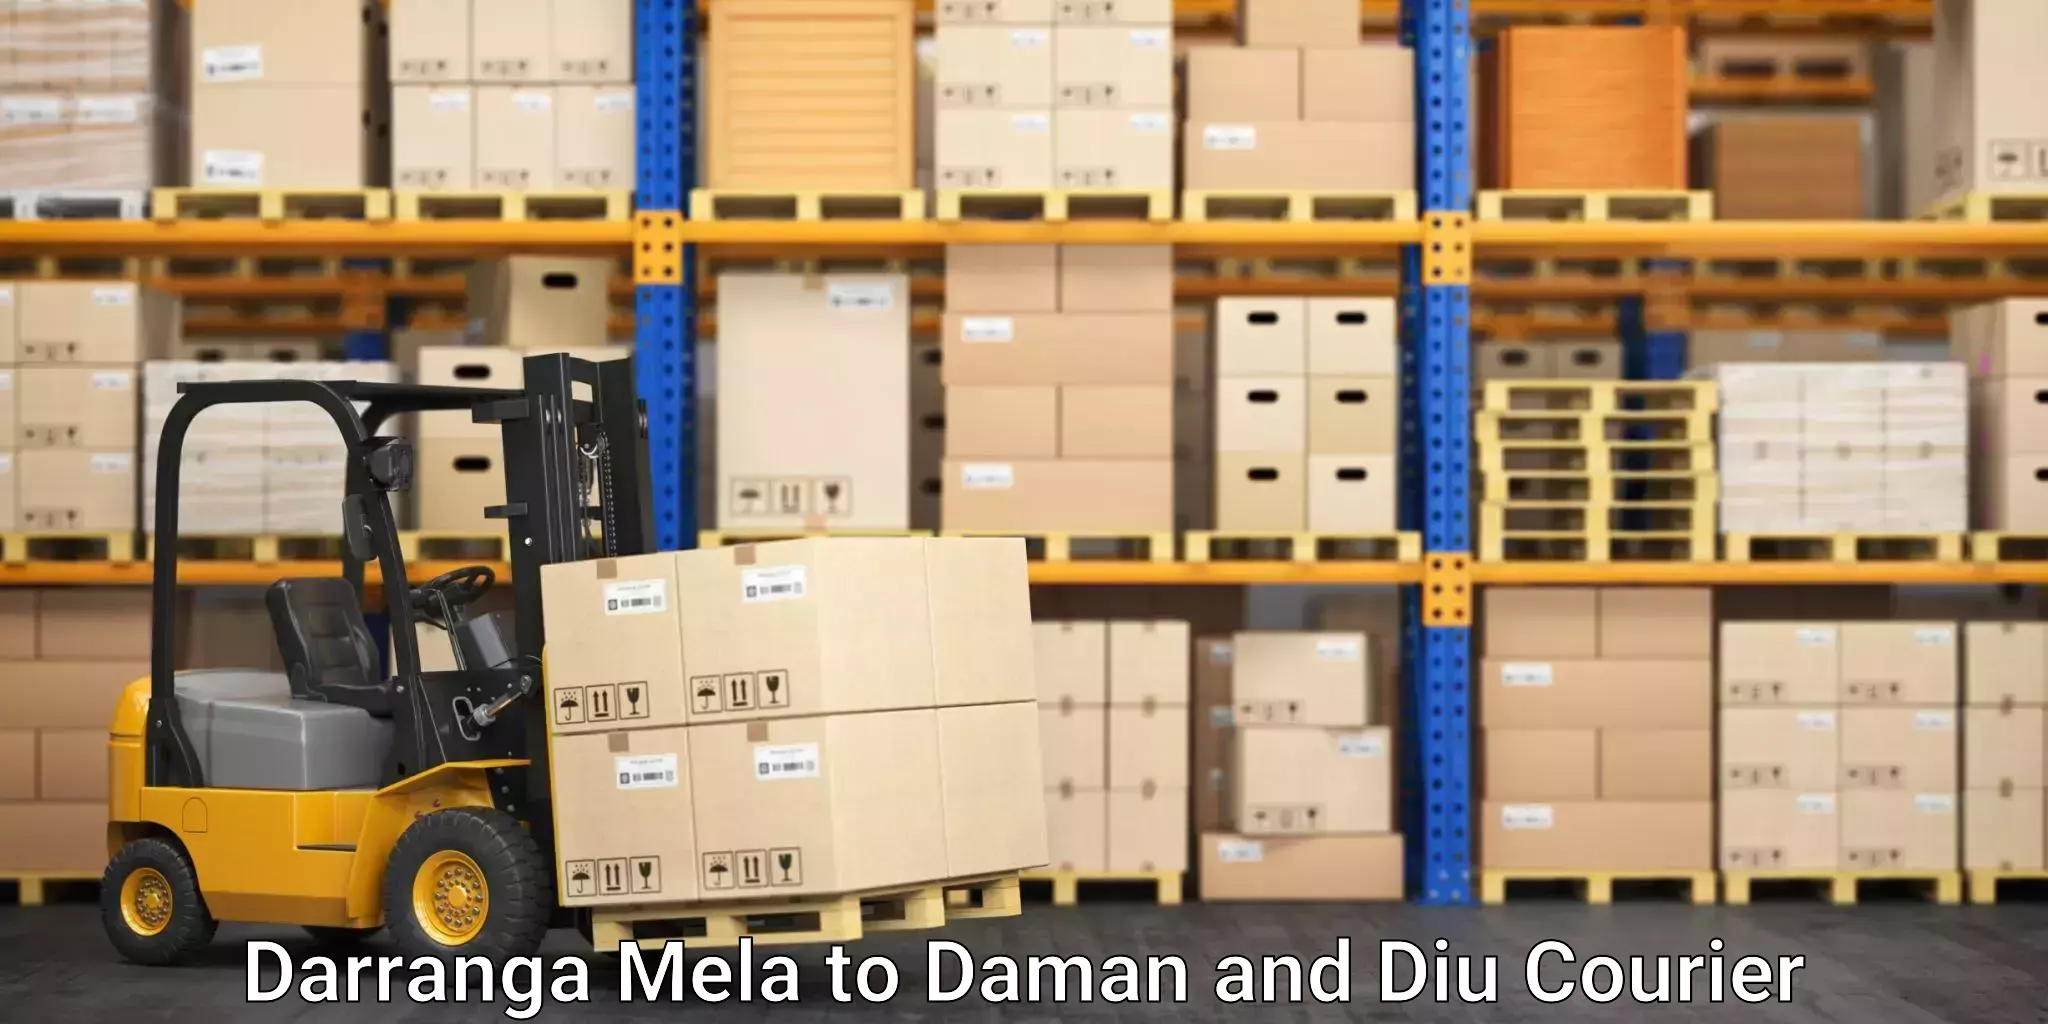 Advanced shipping services Darranga Mela to Daman